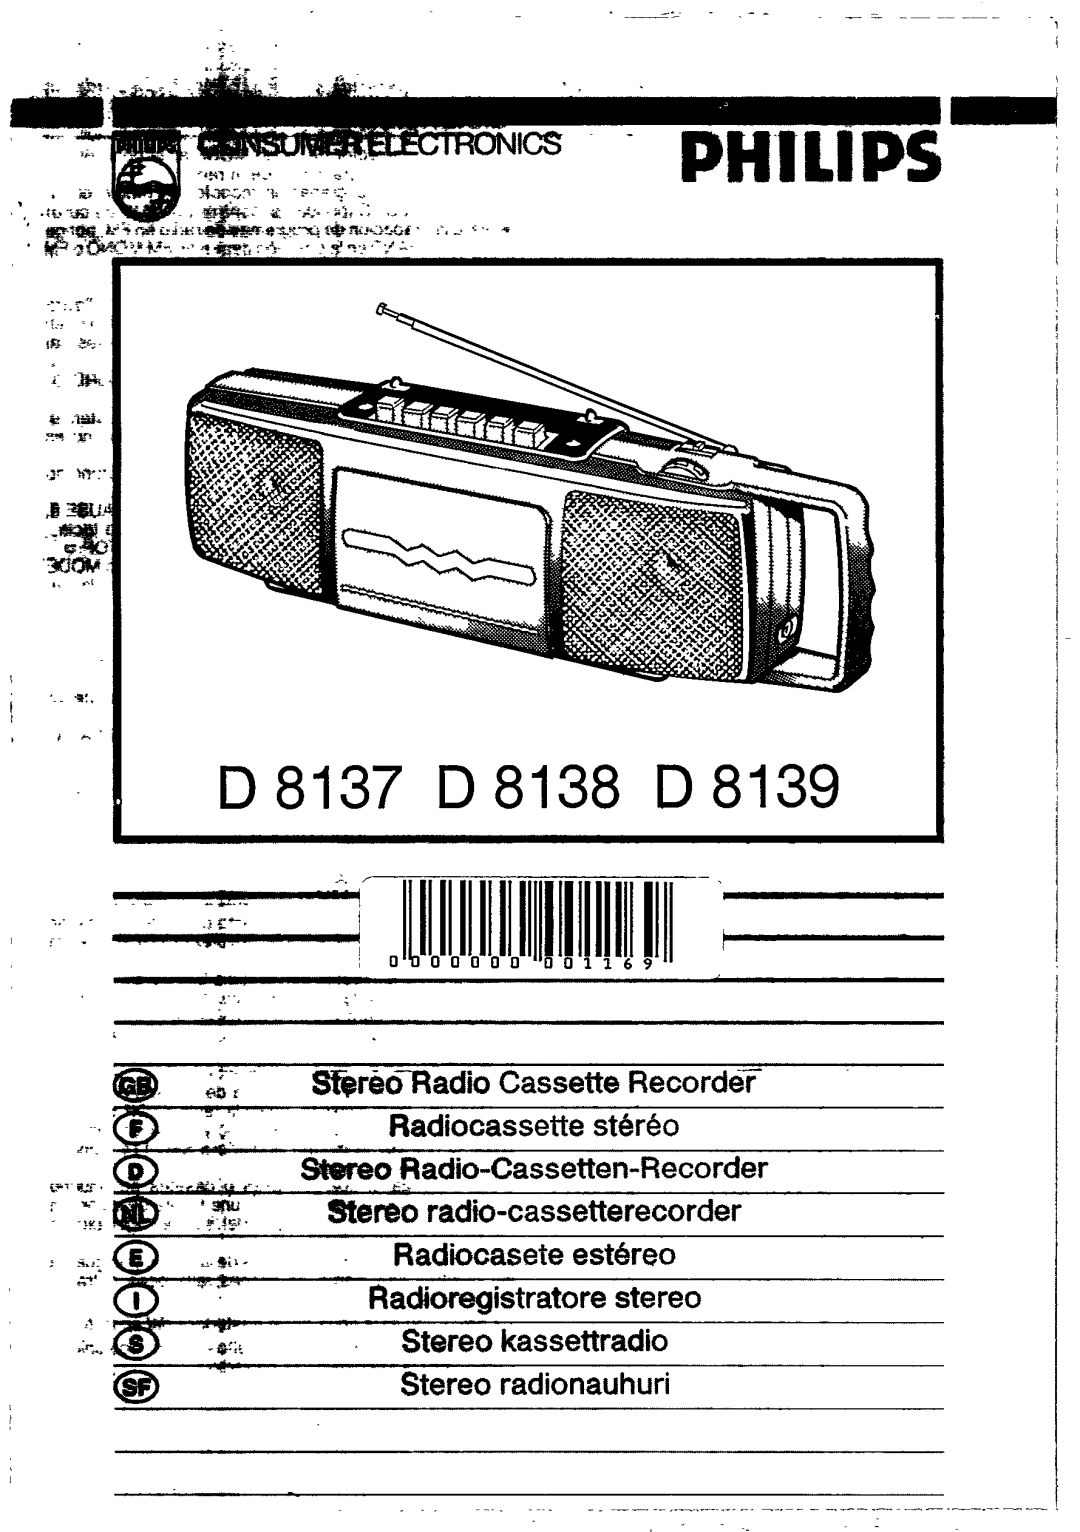 Philips D 8137, D 8138, D 8139 manual 